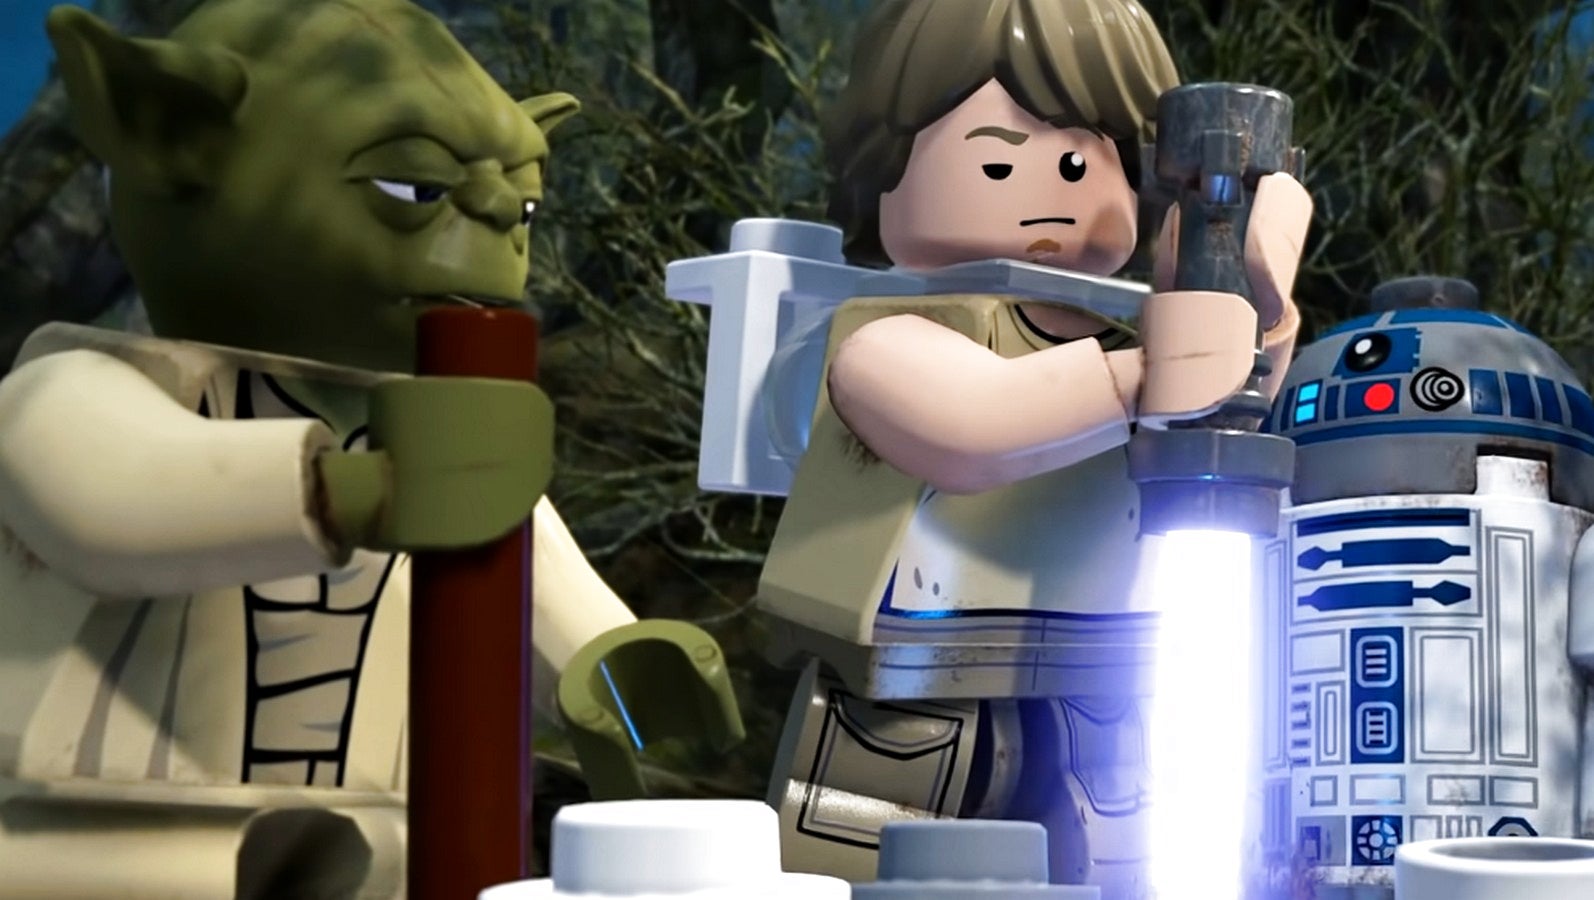 Bilder zu Lego Star Wars: Die Skywalker Saga hat einen Termin - Neues Video blickt hinter die Kulissen